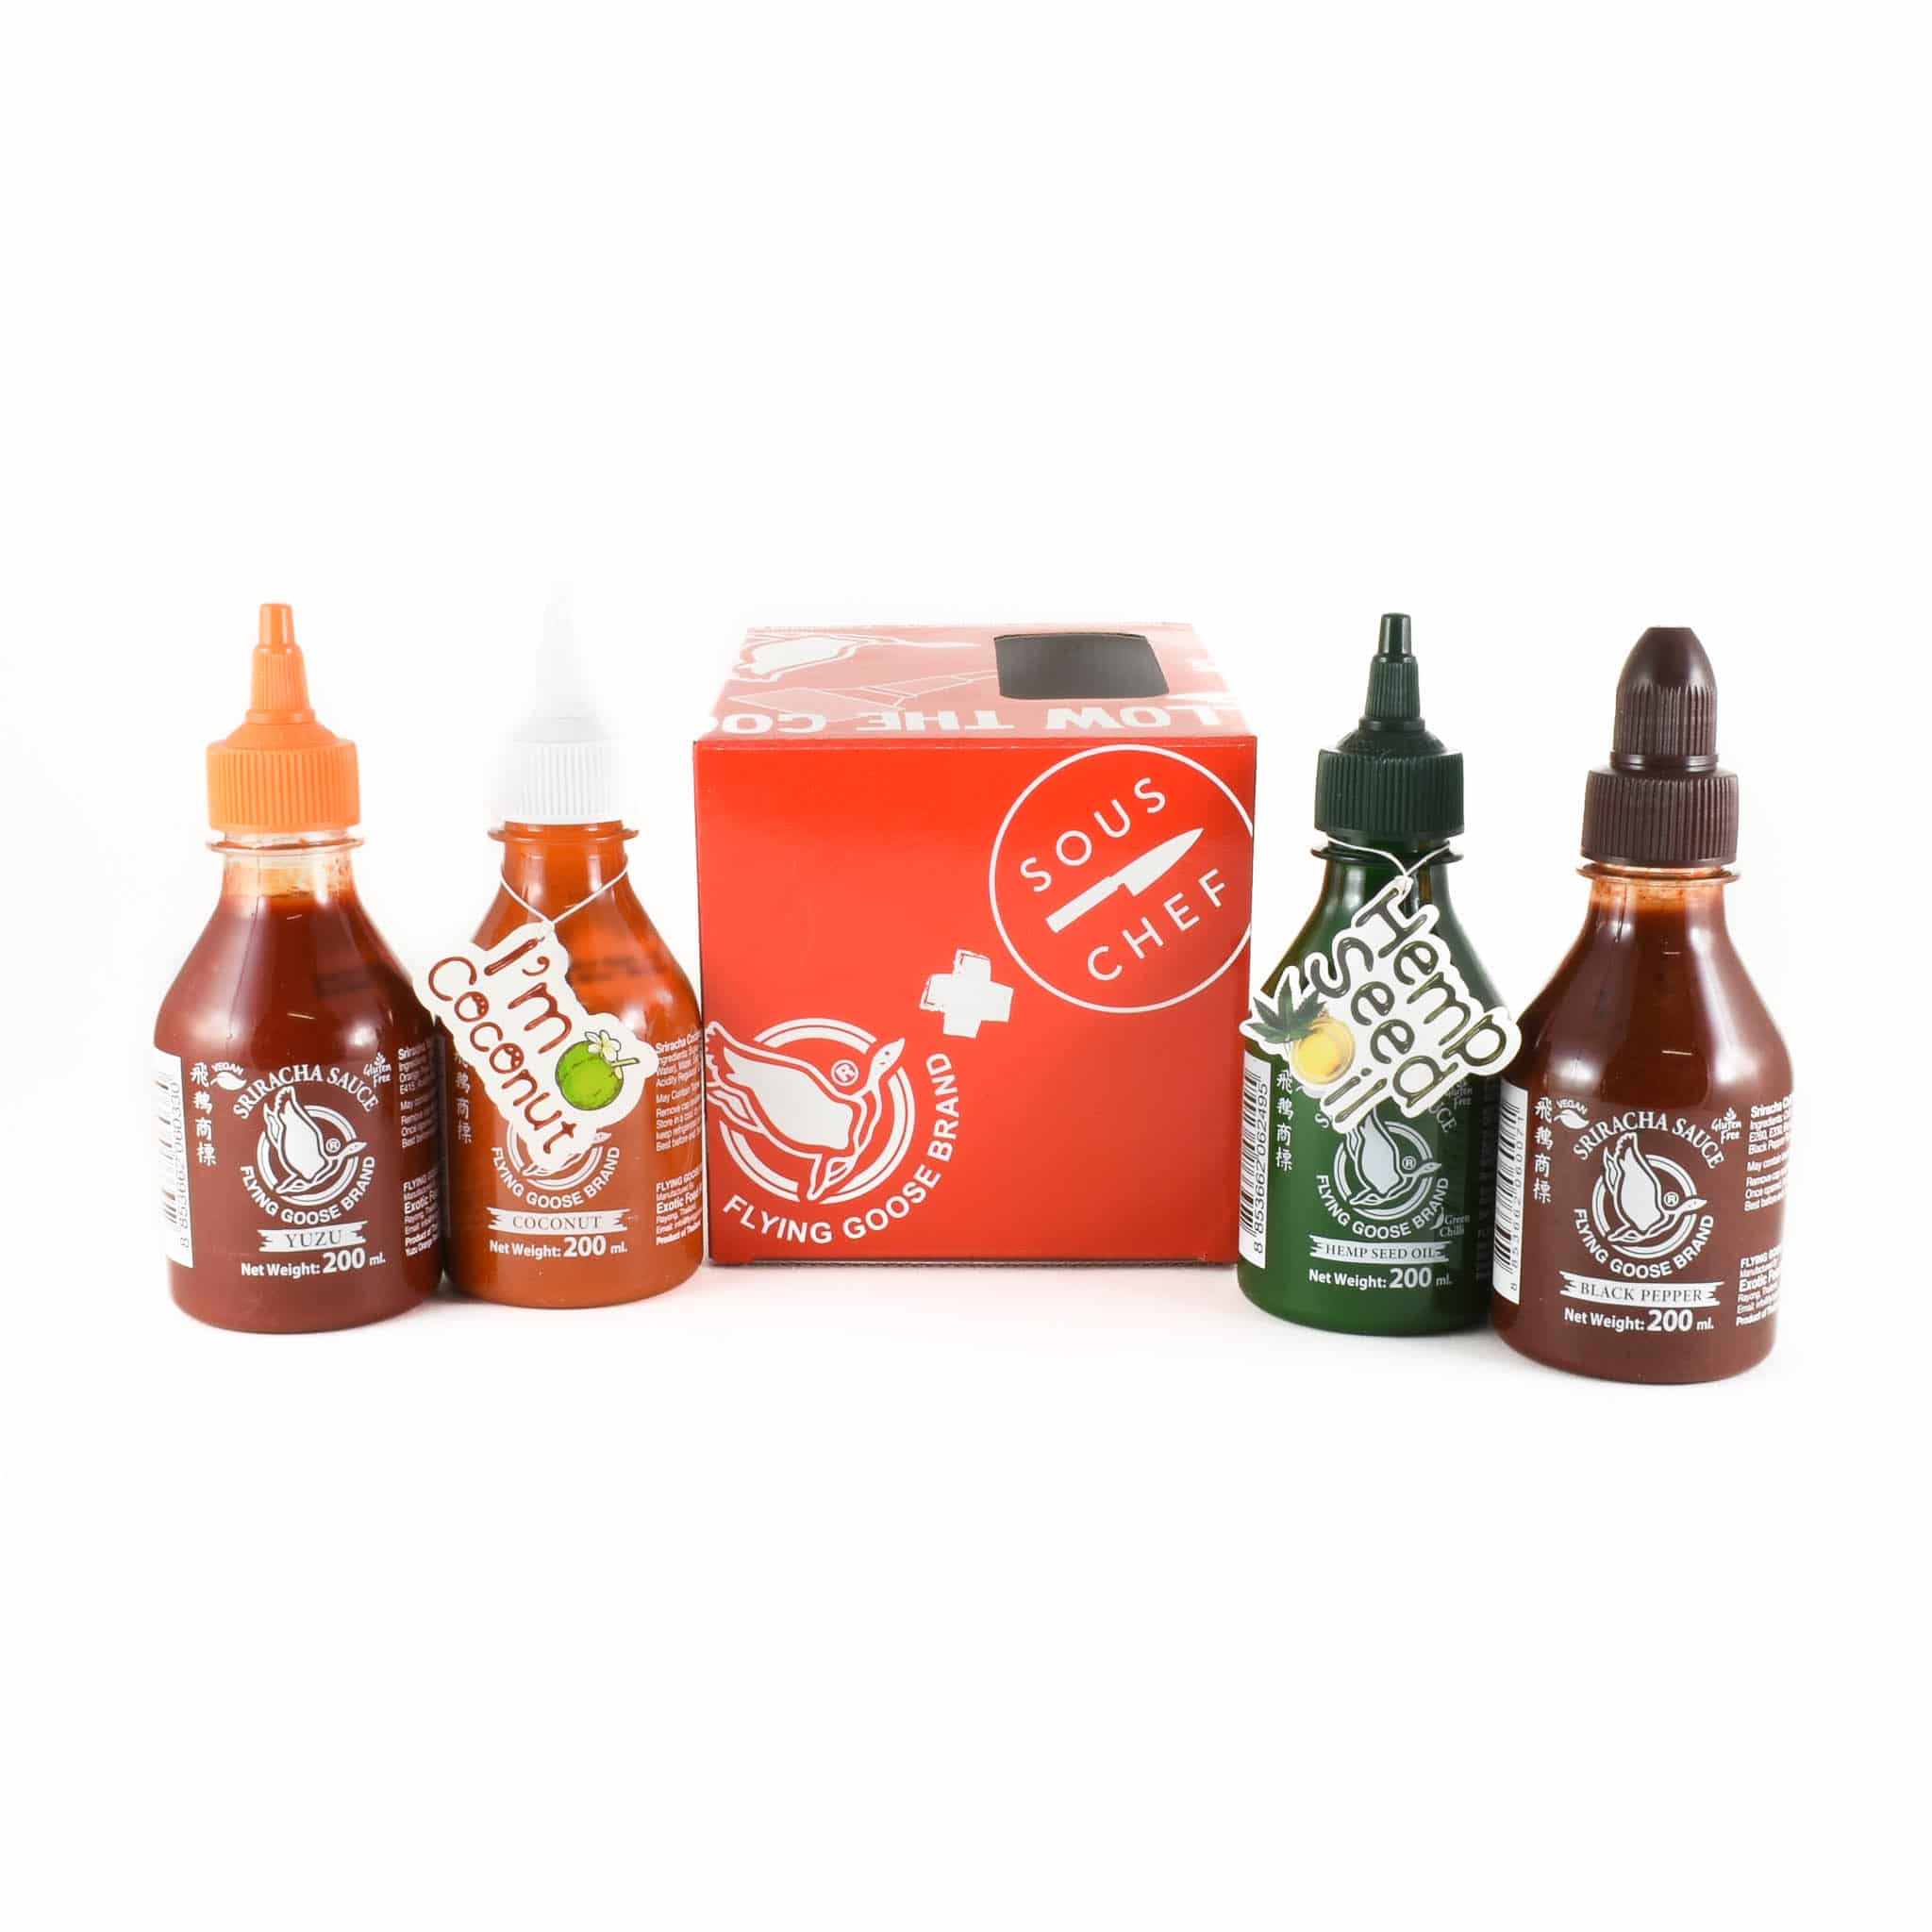 Flying Goose Sriracha 4 Pack 4 x 200ml